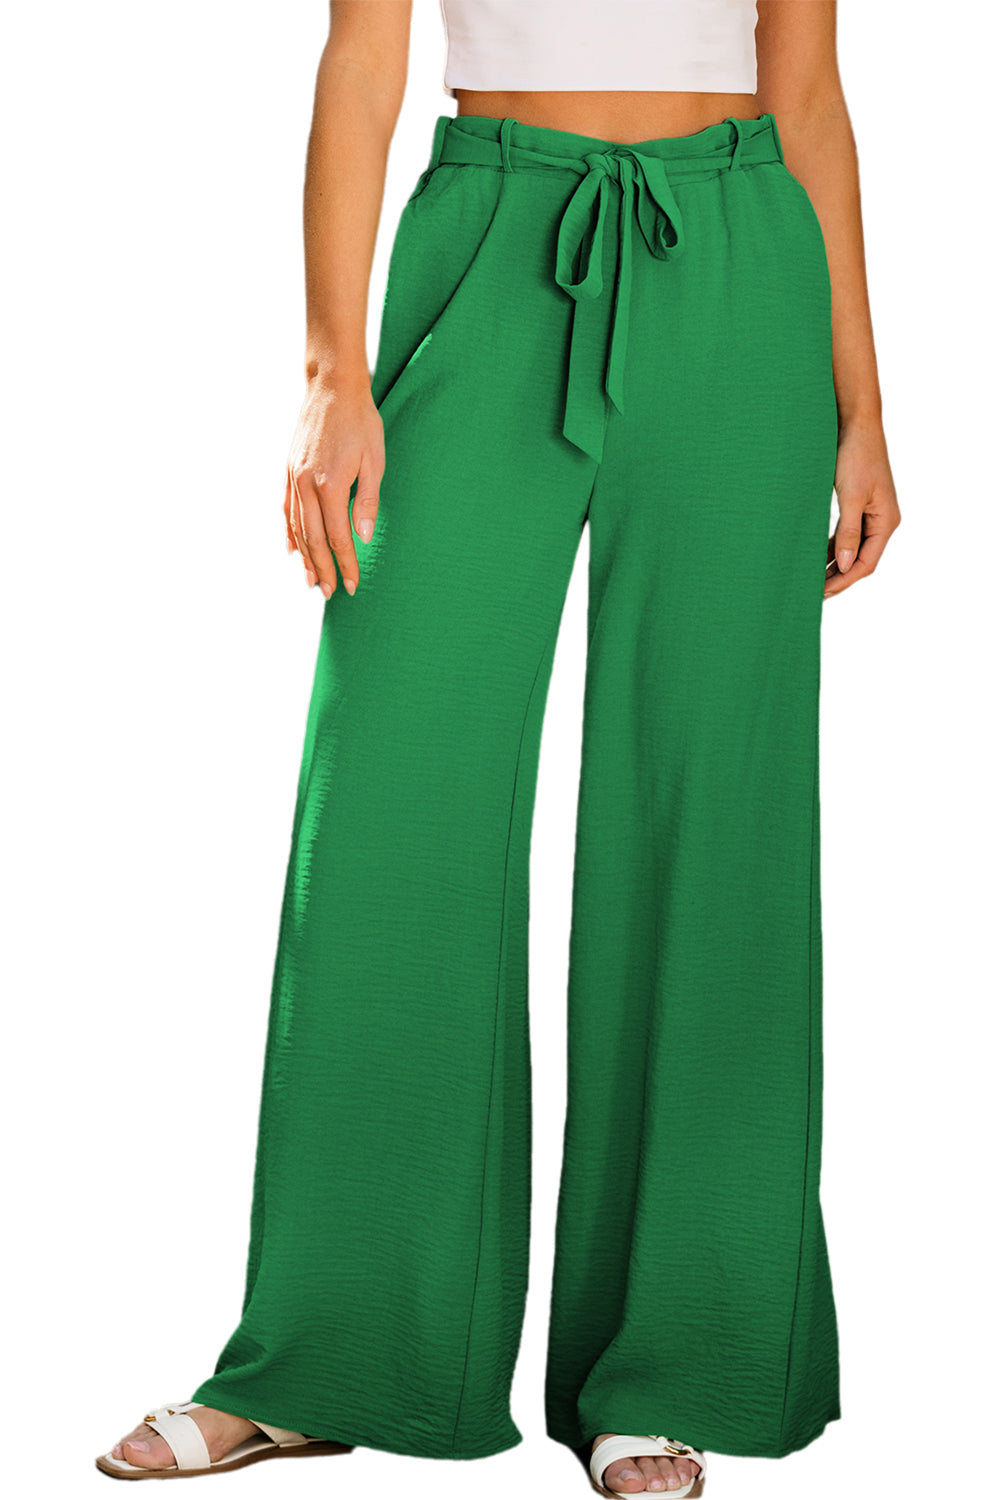 Pantaloni a gamba larga con cintura e passanti a vita alta verde brillante